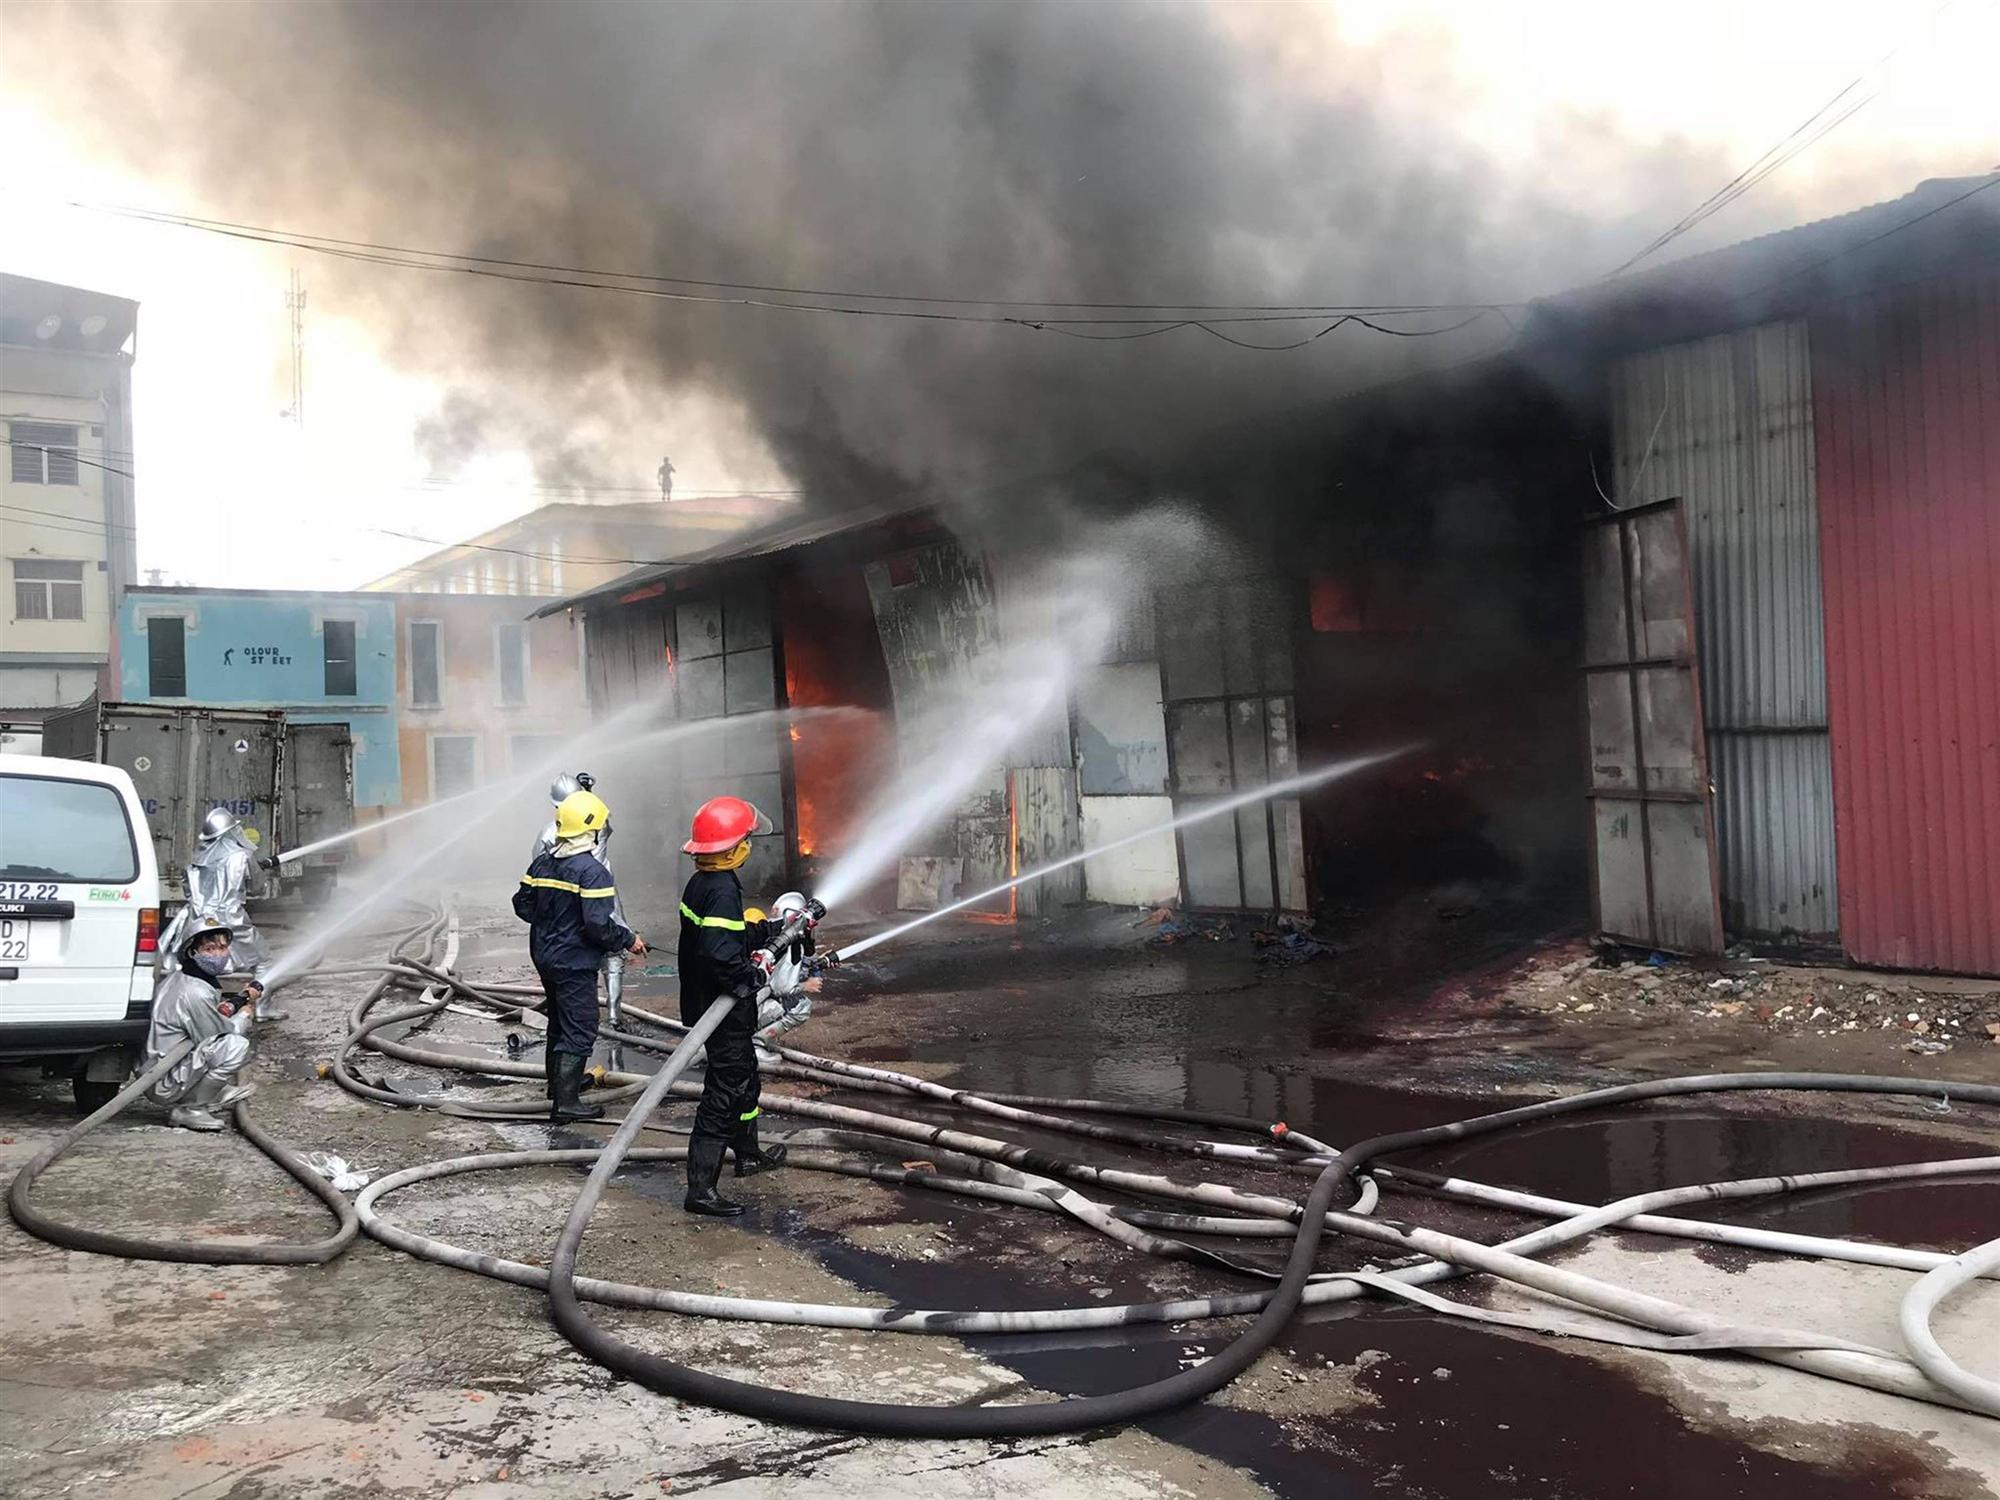 Hà Nội: Cháy khu nhà kho gần Bến xe Nước Ngầm, người dân cố gắng giải cứu chiếc xe hiệu Ford Ranger-3